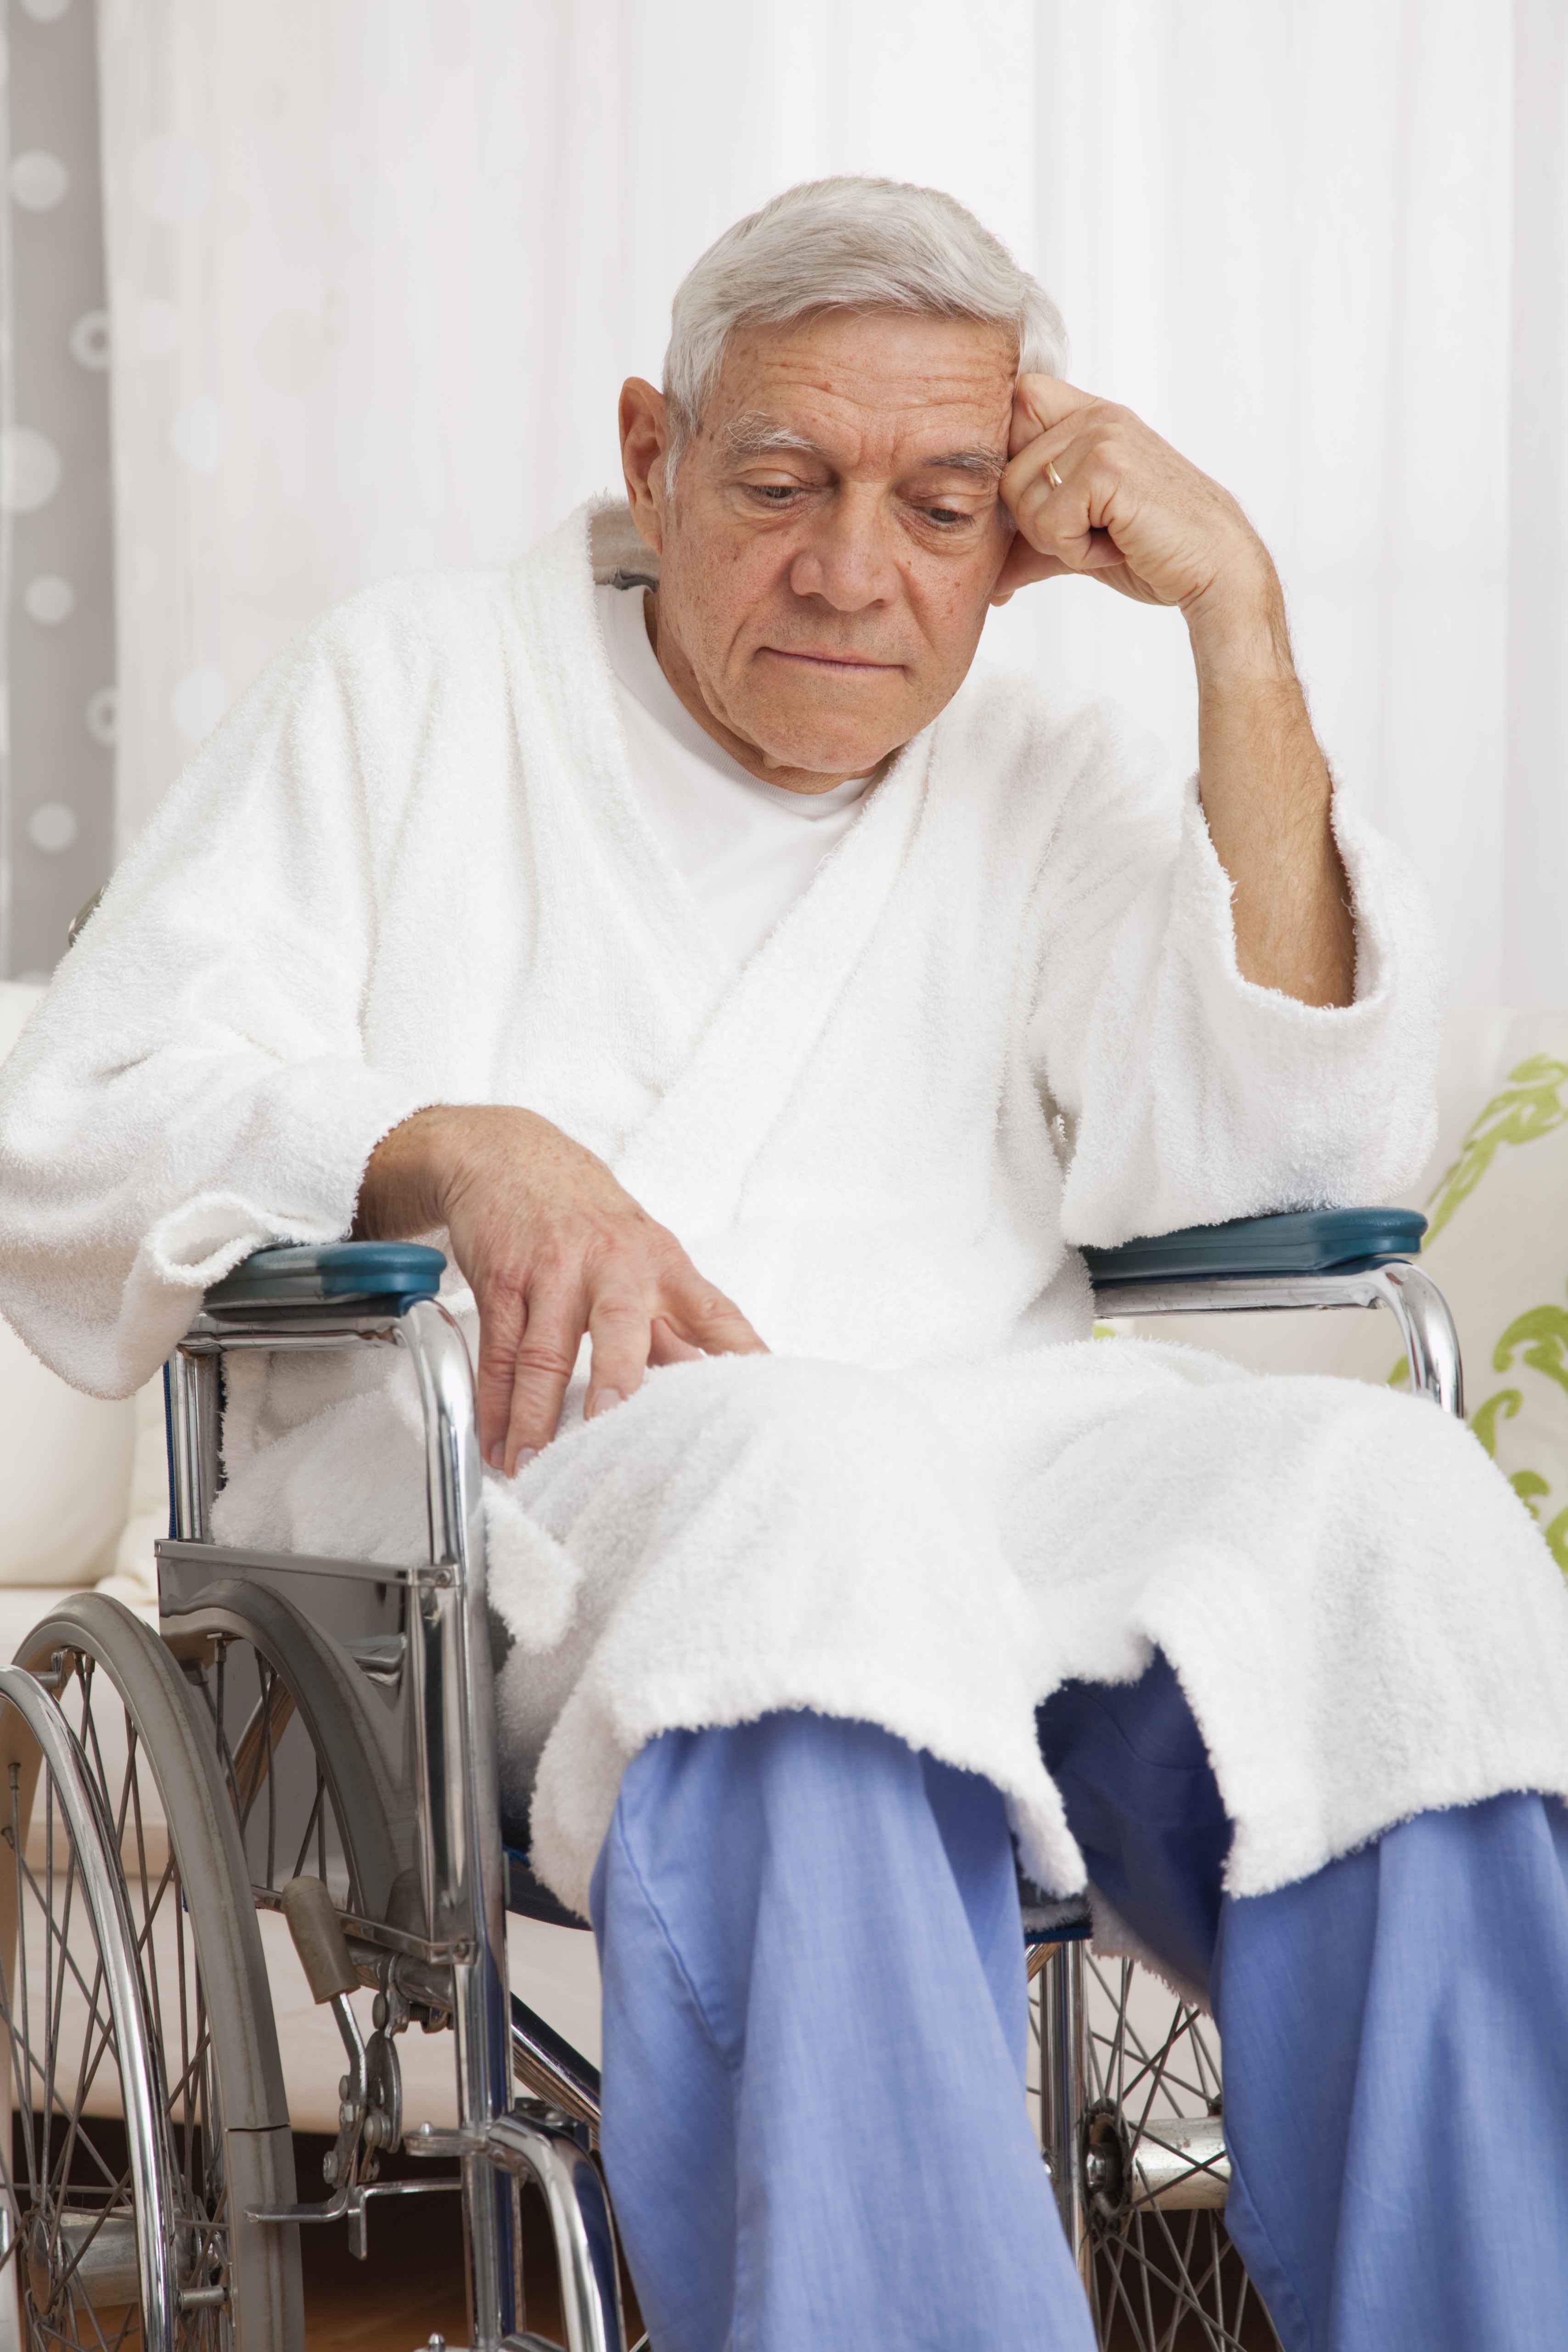 Sad senior man in a wheelchair.